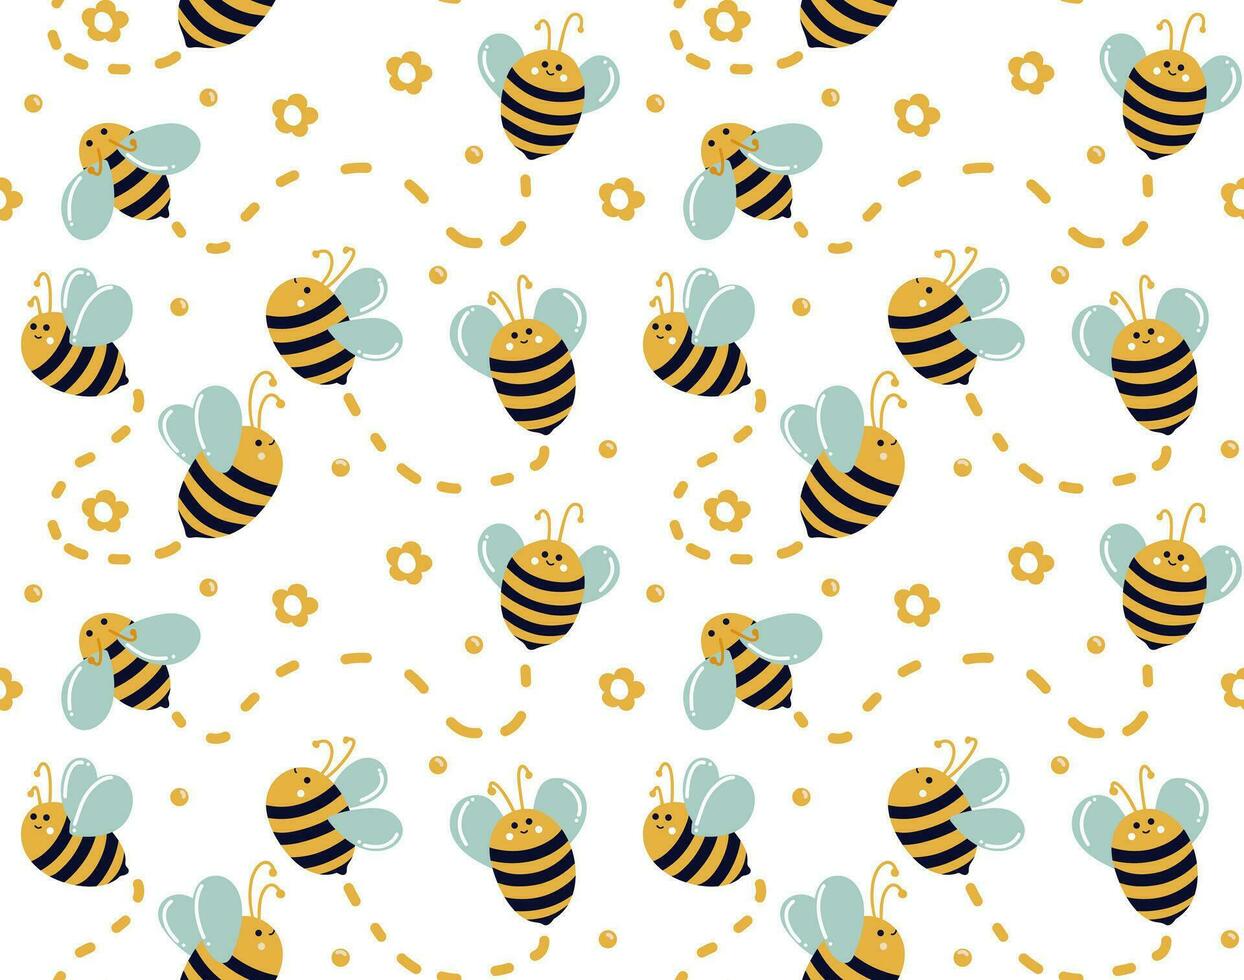 bin flytta i annorlunda vägbeskrivning på vit bakgrund med honung droppar, daisy och rader av rörelse. söt bin. sömlös bi mönster för ungar. sommar mönster för tyger, säng Linné, dekor vektor